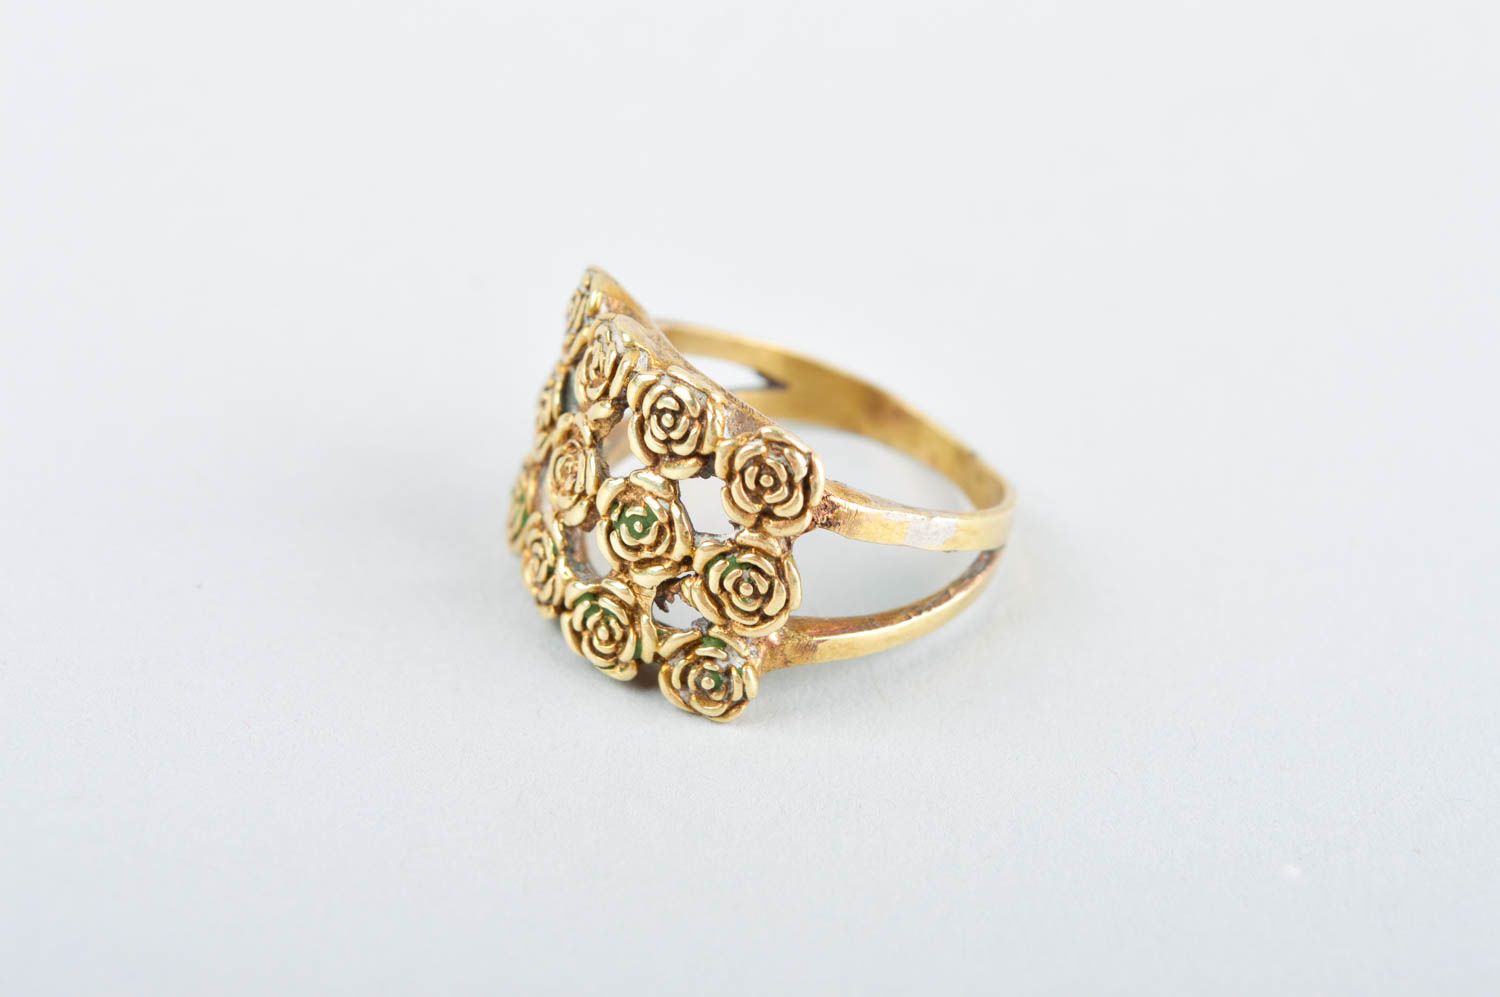 Кольцо ручной работы оригинальное украшение из металла модное кольцо с розами фото 2